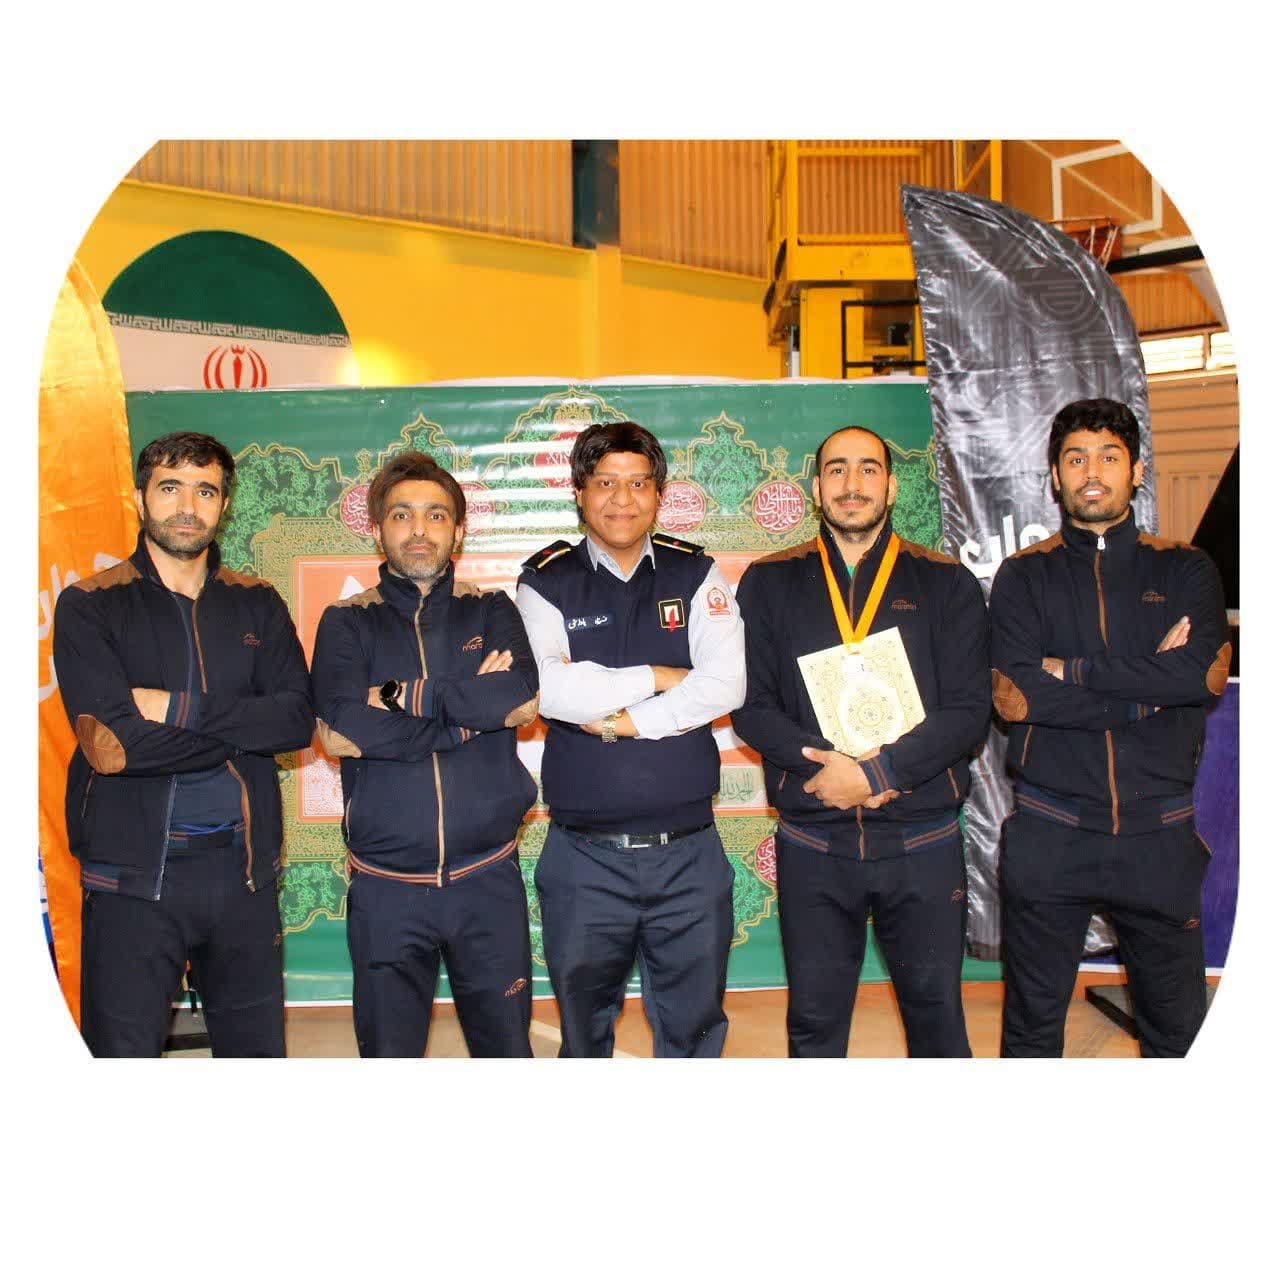 کسب مقام سوم توسط آتش نشانی اسلامشهر در مسابقات عملیاتی ورزشی چالشی استان تهران